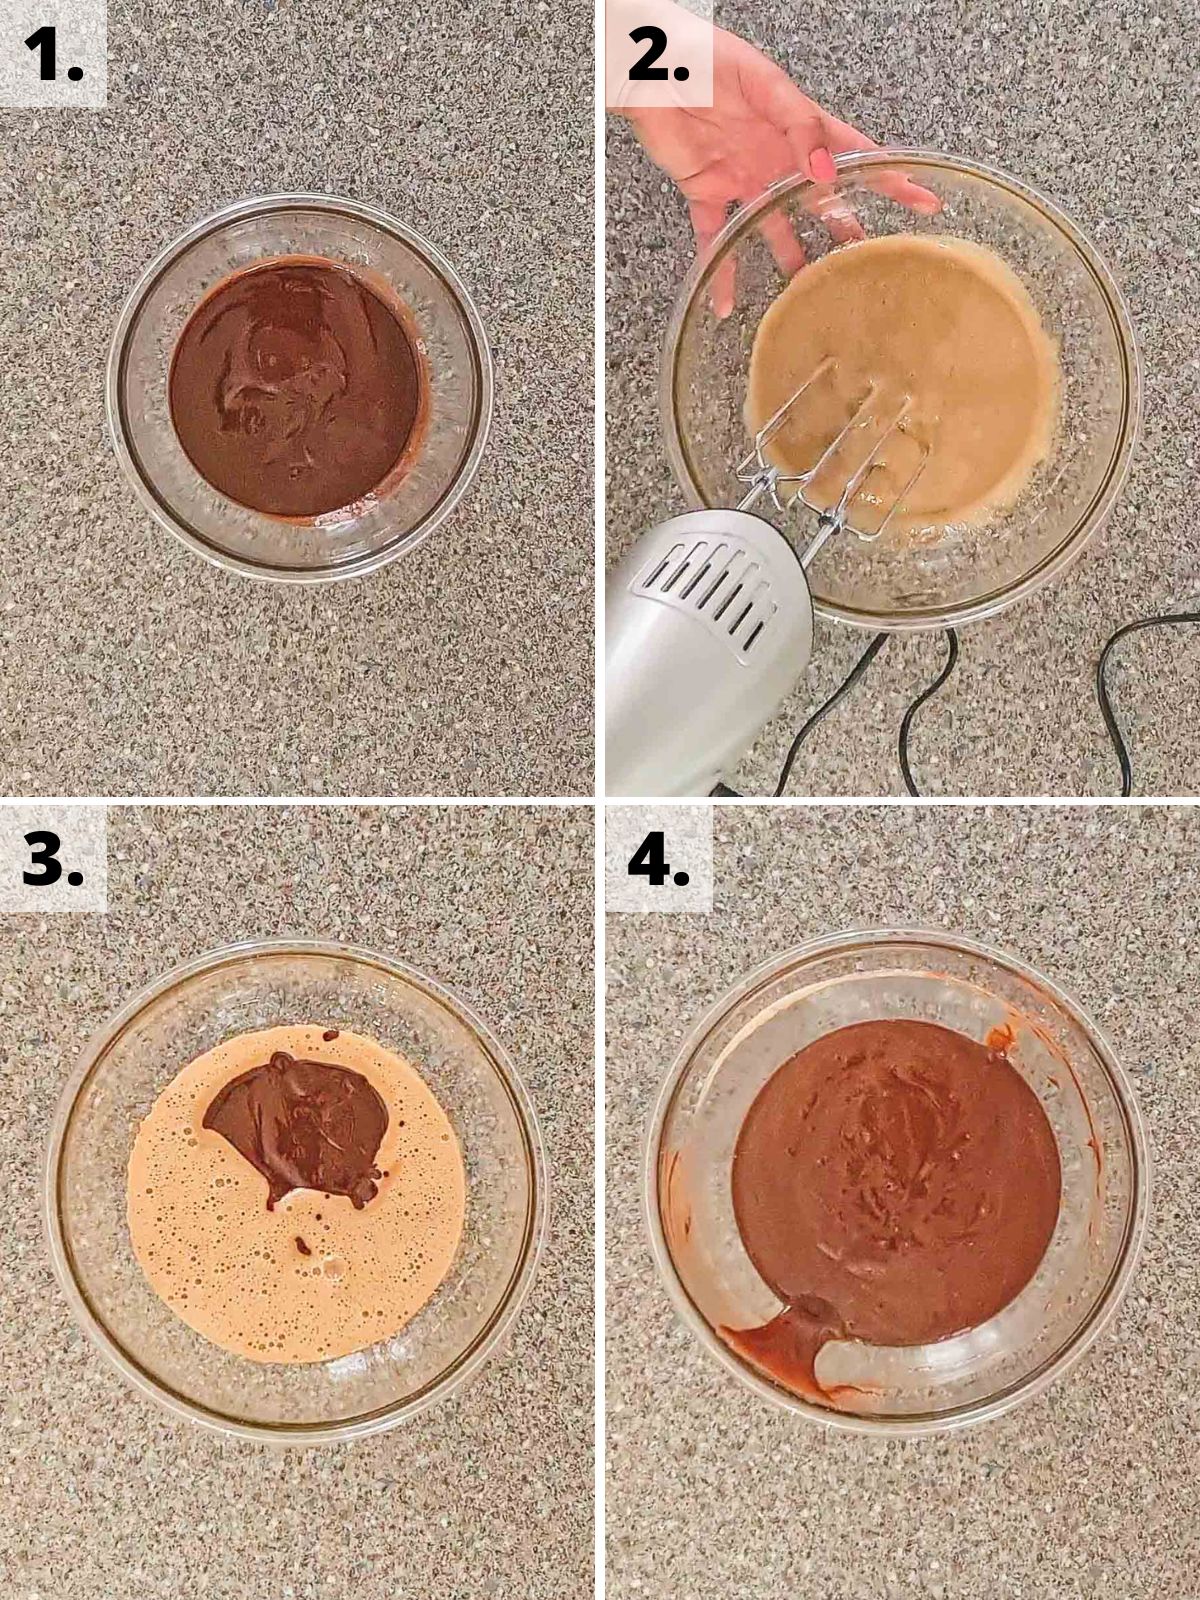 gluten free chocolate brownie cookies recipe method steps 1 to 4.